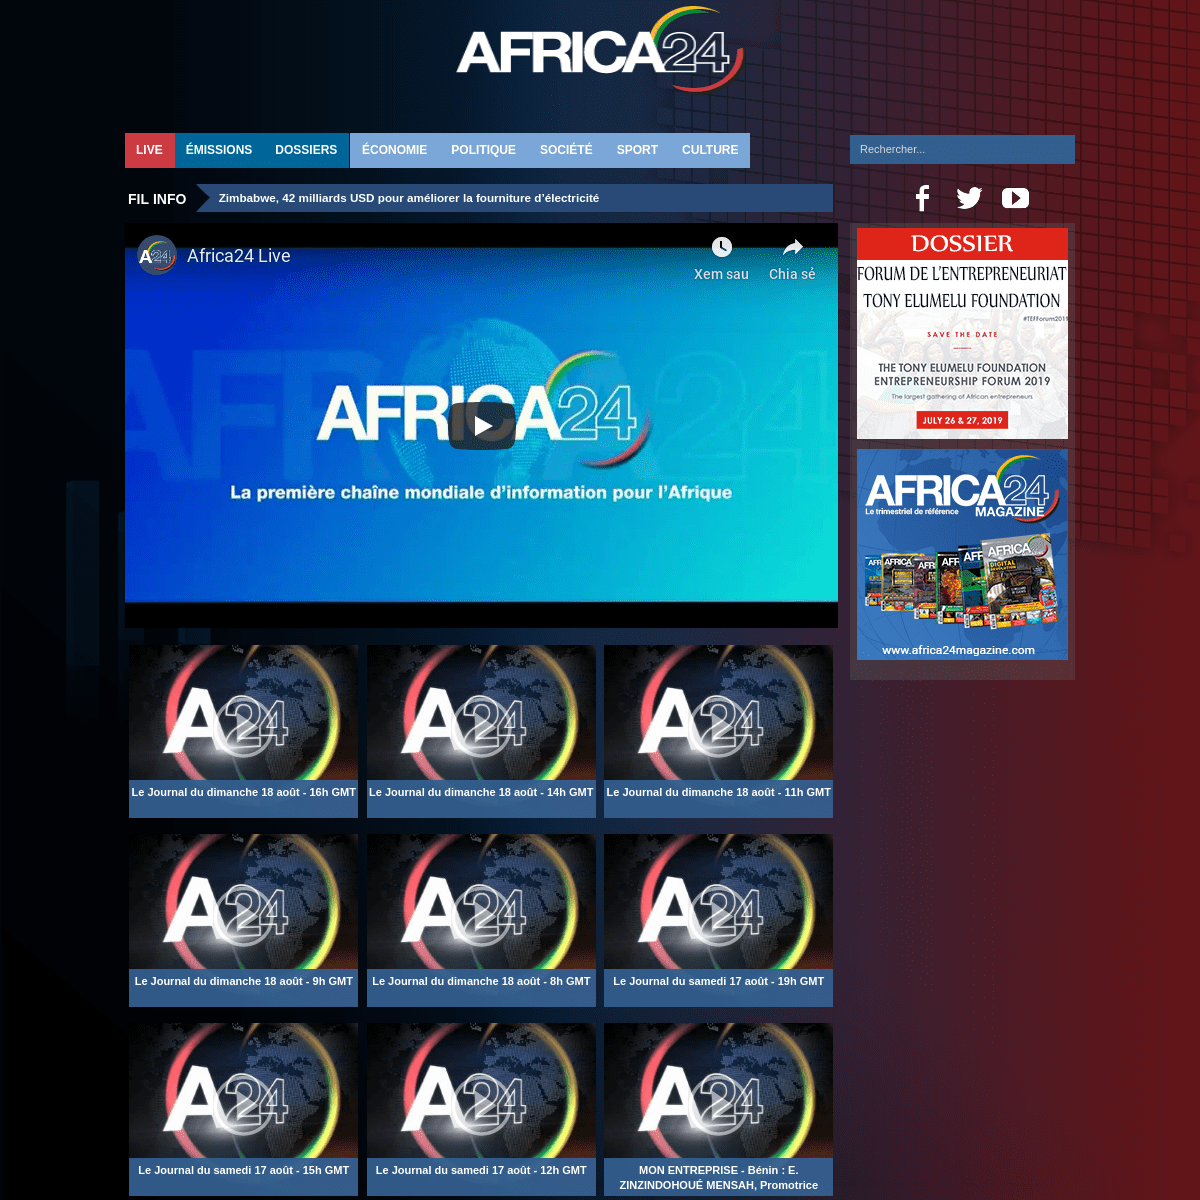 Africa24 | La première chaîne mondiale d'information pour l'Afrique